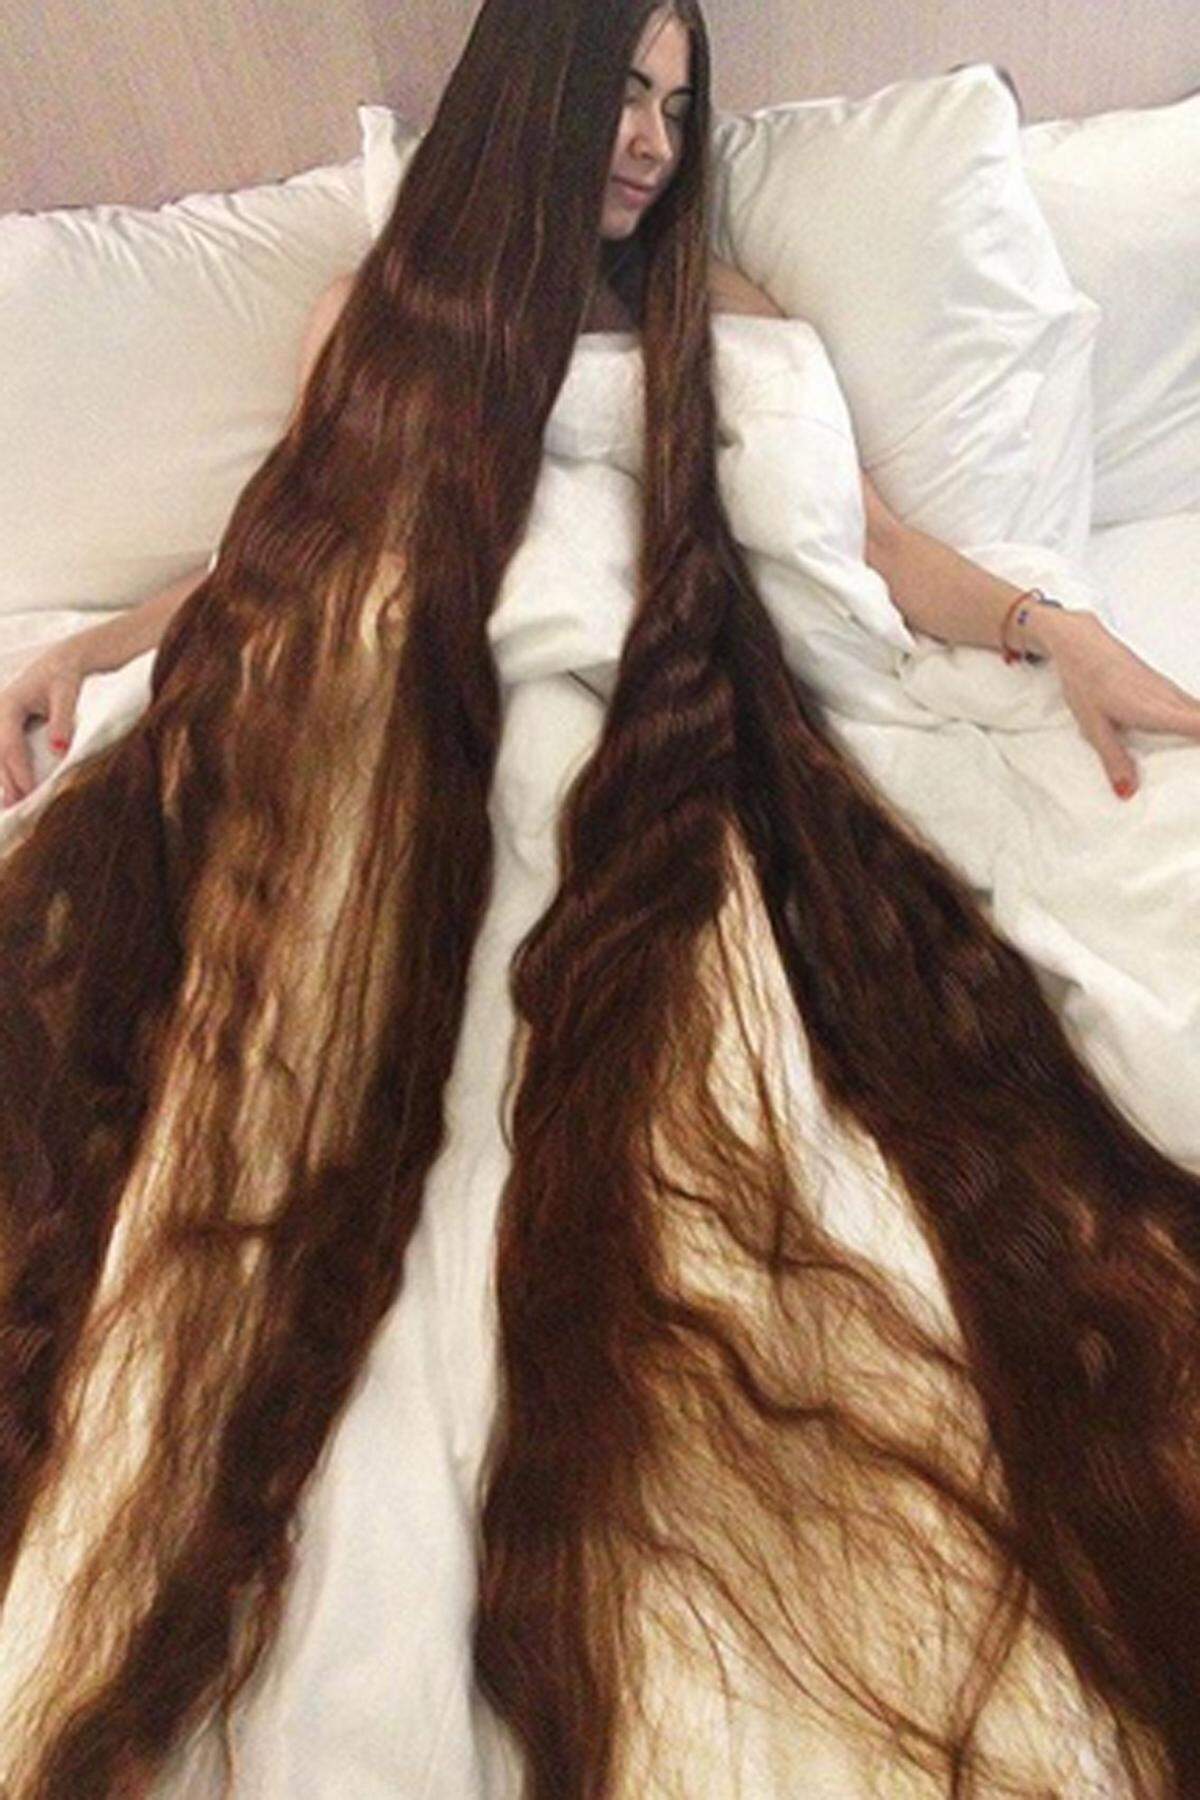 Eine richtige Wallemähne trägt die gebürtige Russin Alechka Nasyrova, die ihre Haare seit 20 Jahren nicht geschnitten haben soll, wie sie der "Daily Mail" stolz erzählt. Ganze 2,30 Meter hängen ihr die Rapunzel-Strähnen vom Kopf. Ihr Ehemann bezeichnet die Frisur übrigens als vollwertiges Familienmitglied.